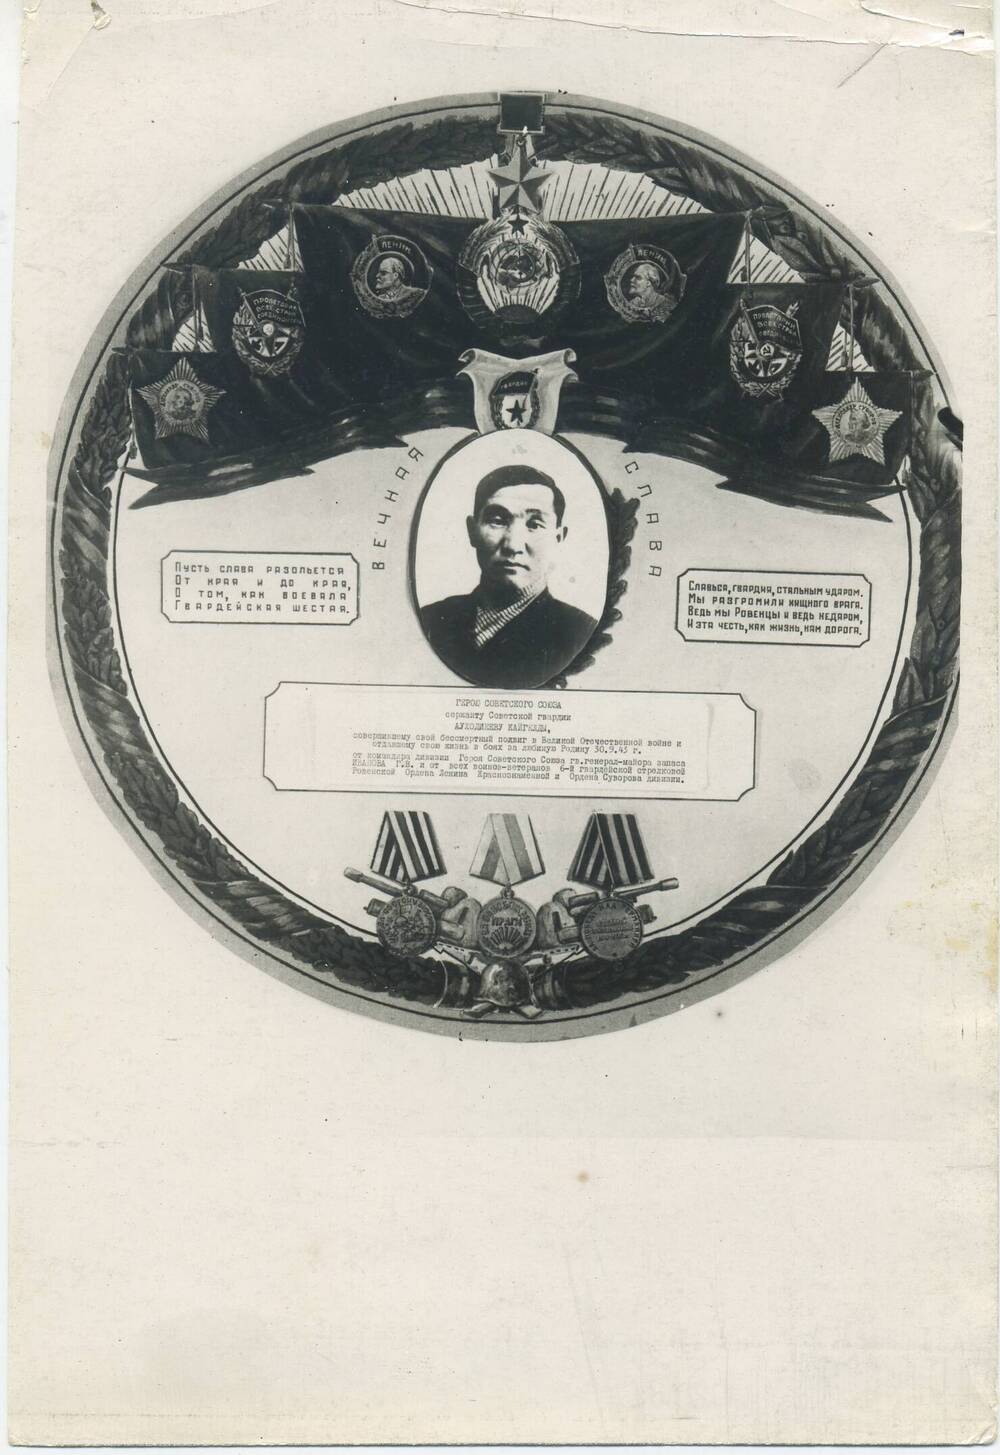 Фото Героя Советского Союза Ауходиева Кайгелды 10 гв. с.п. 6  с.д.  Фото погрудное в обрамлении наградными значками (орденами и медалями 6 с.д.).